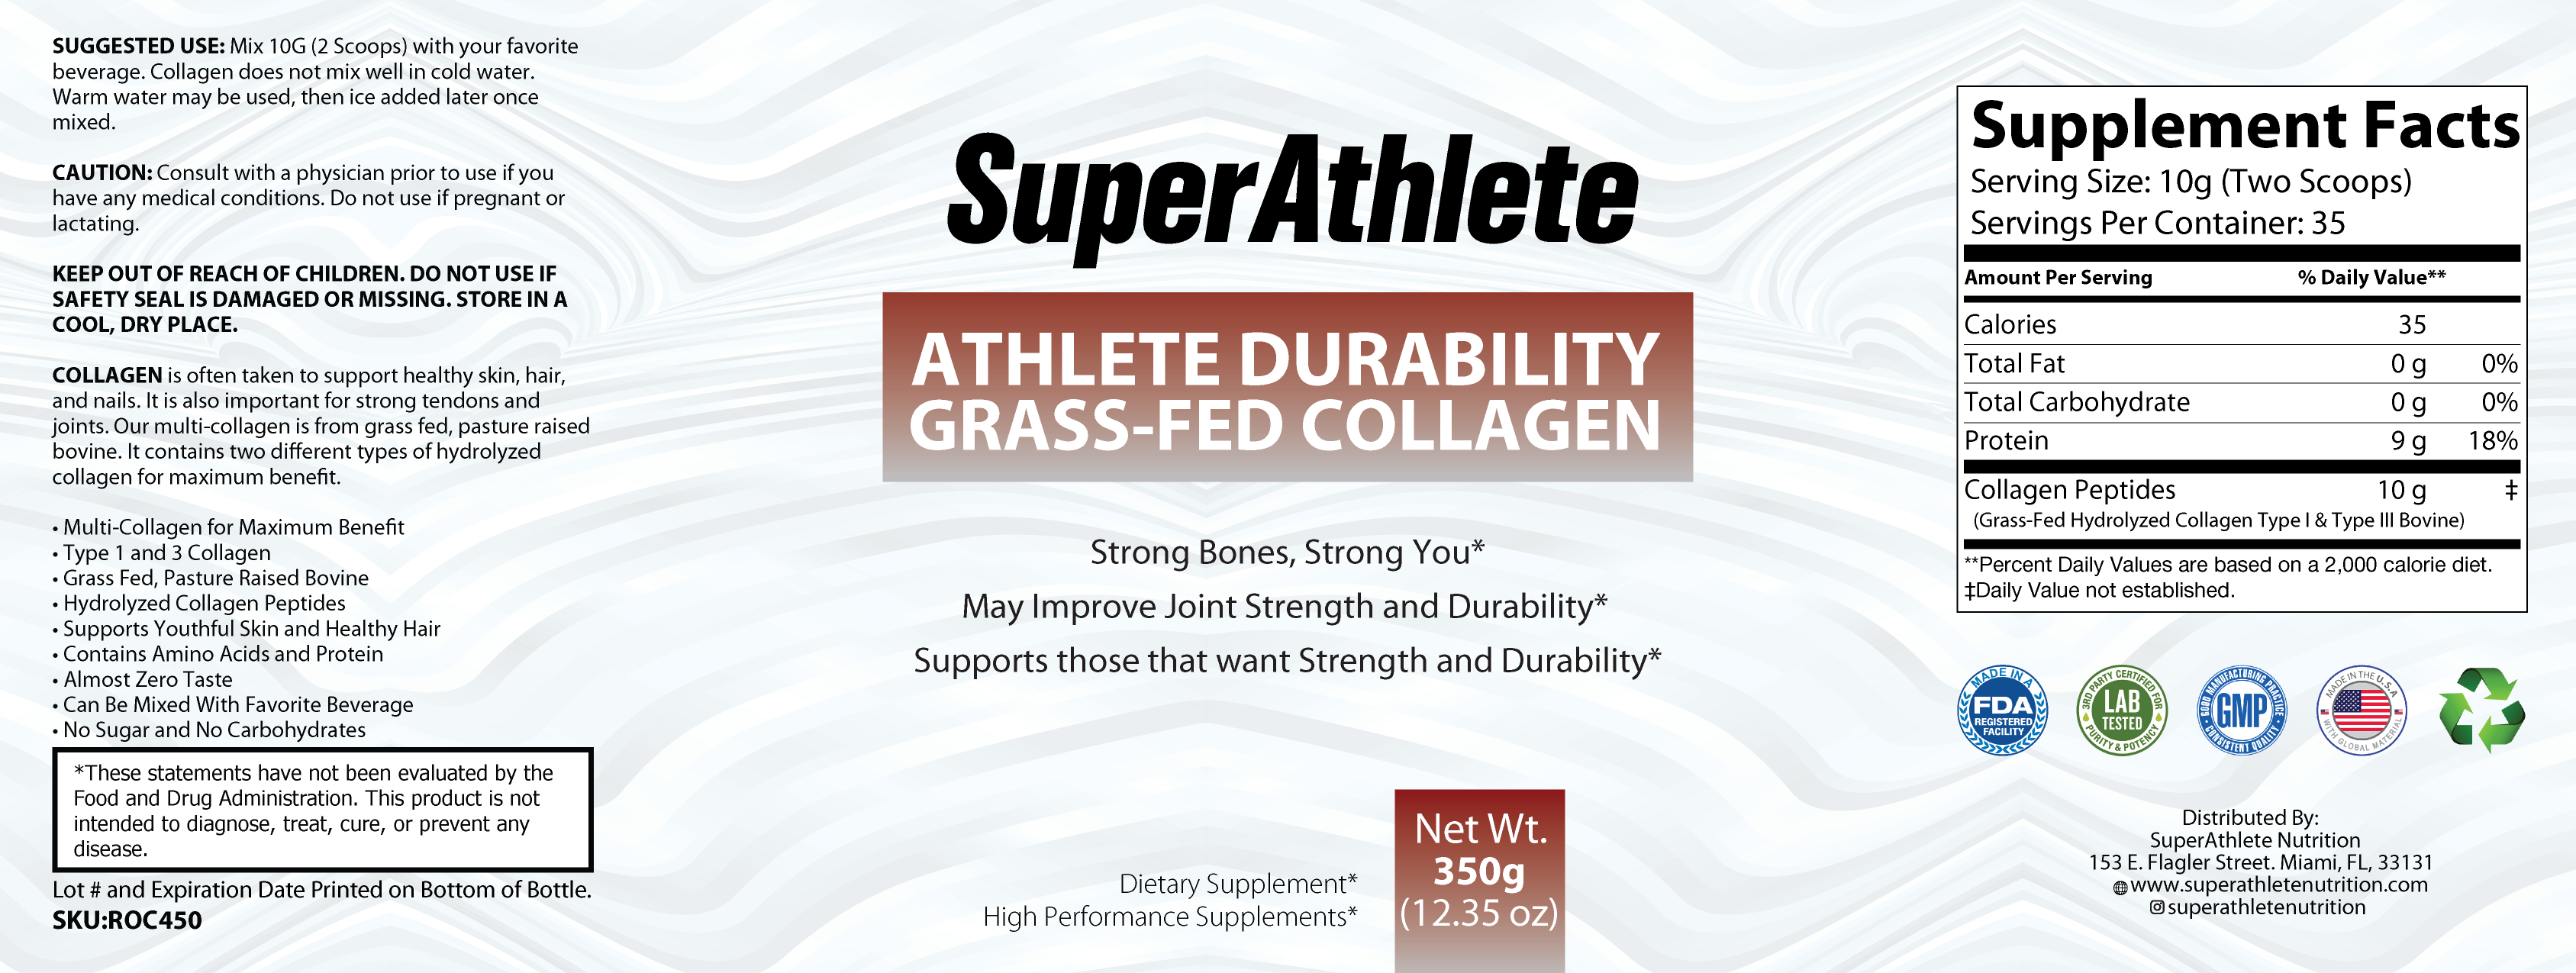 Athlete Durability Grass-Fed Collagen